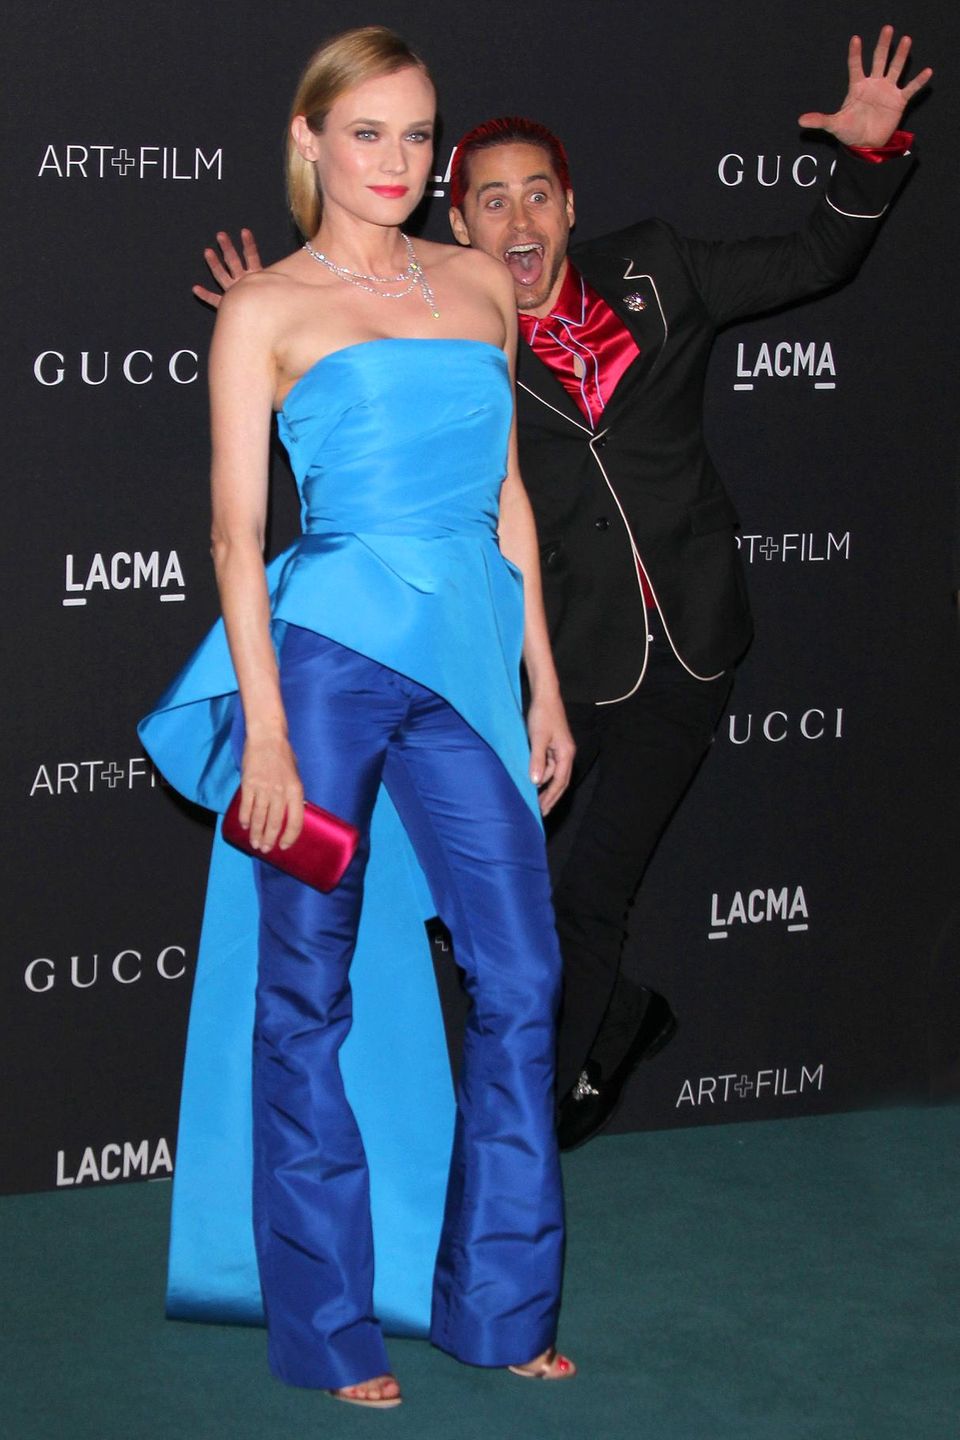 Jared Leto kann's nicht lassen. Während Diane Kruger bei der "LACMA Art+Film"-Gala für die Fotografen posiert, springt der Schauspieler ins Bild. Das ergibt natürlich ein viel lustigeres Motiv.